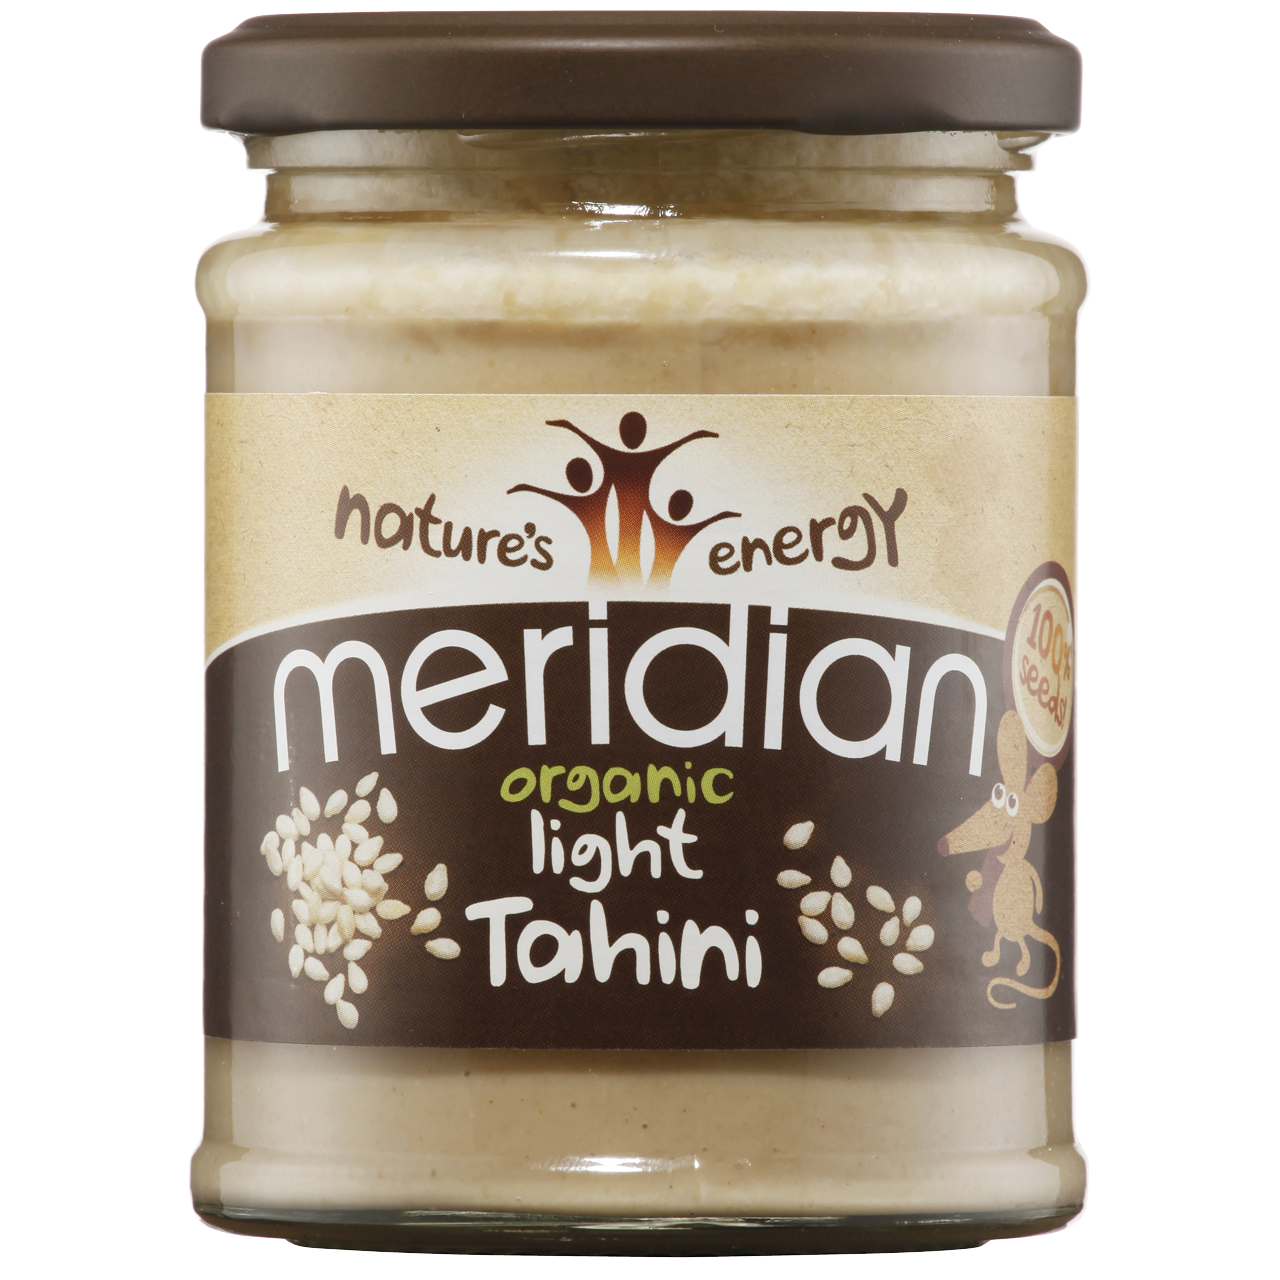 Meridian Organic Light Tahini 270g - Just Natural